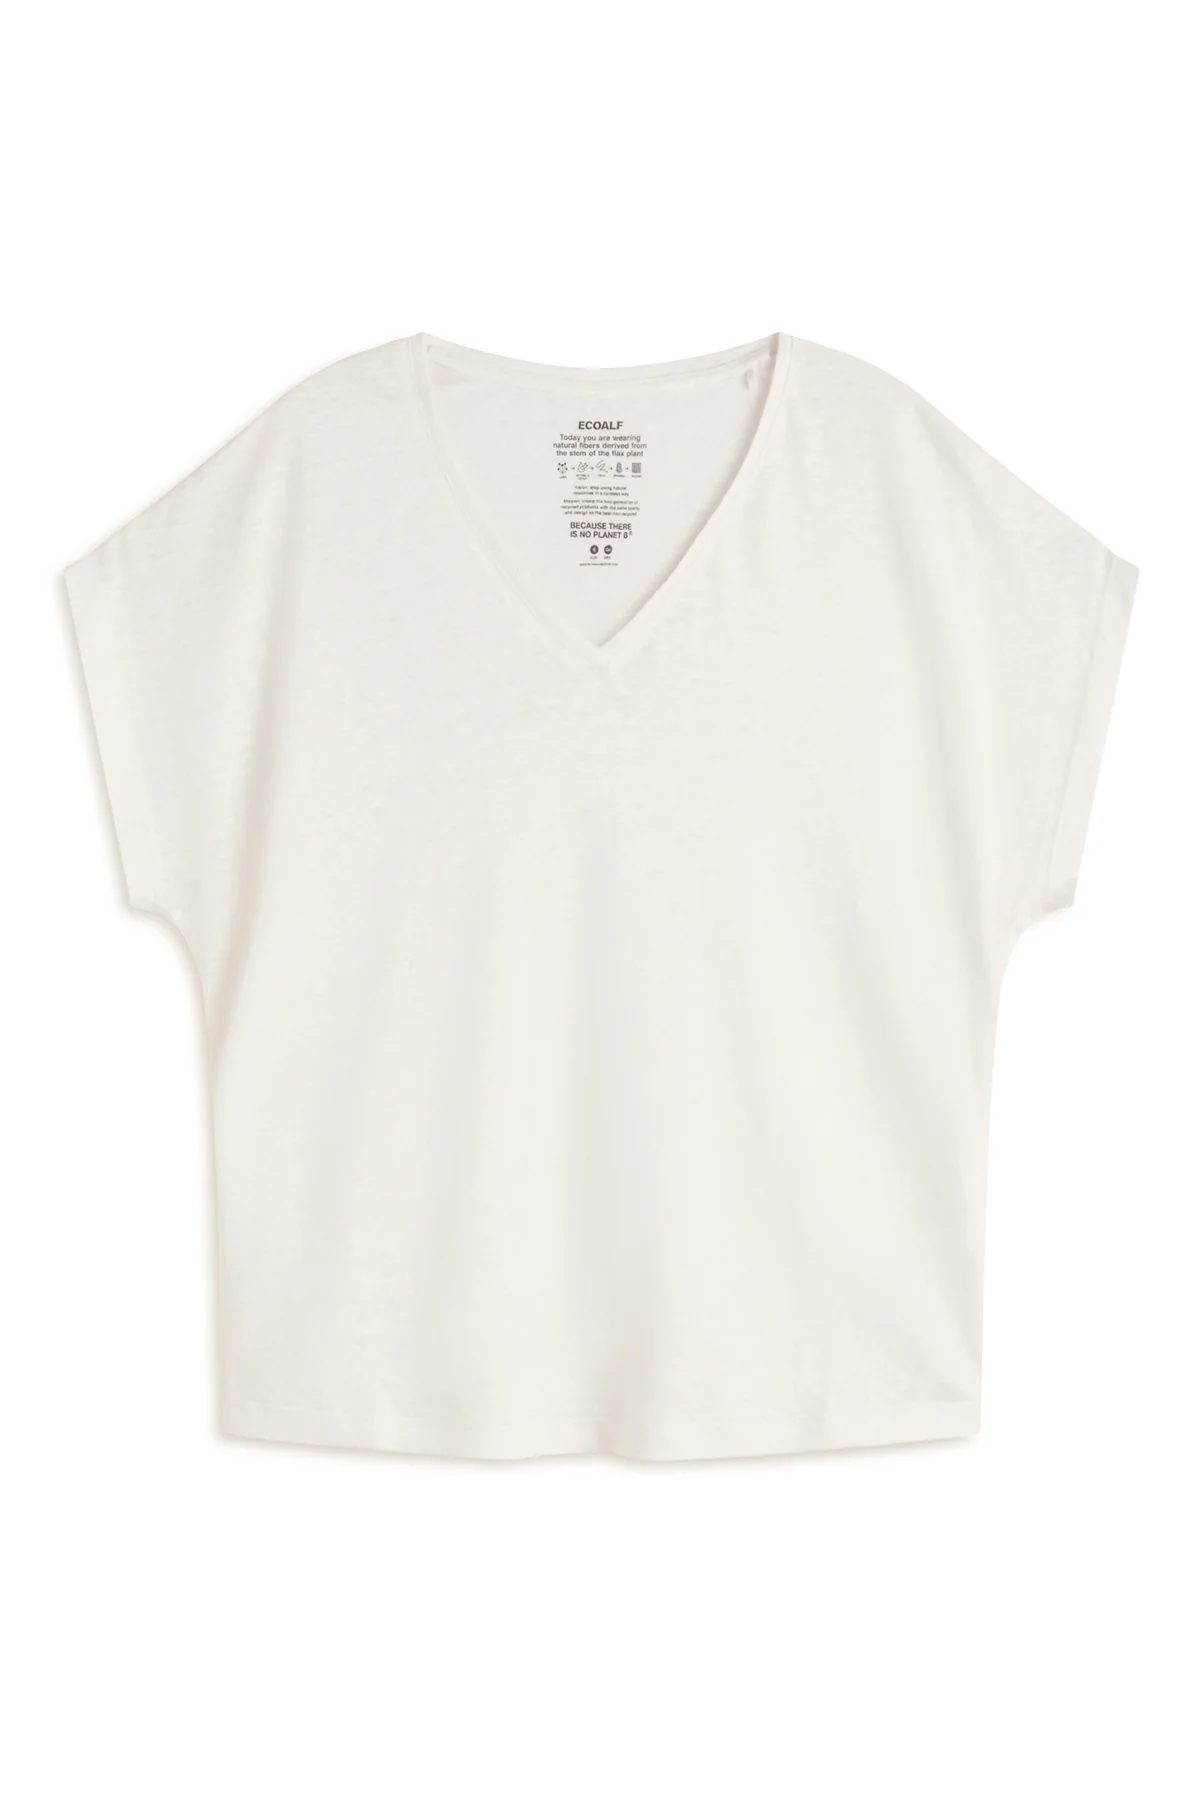 ECOALF camiseta en lino manga corta color blanco y escote pico - 3